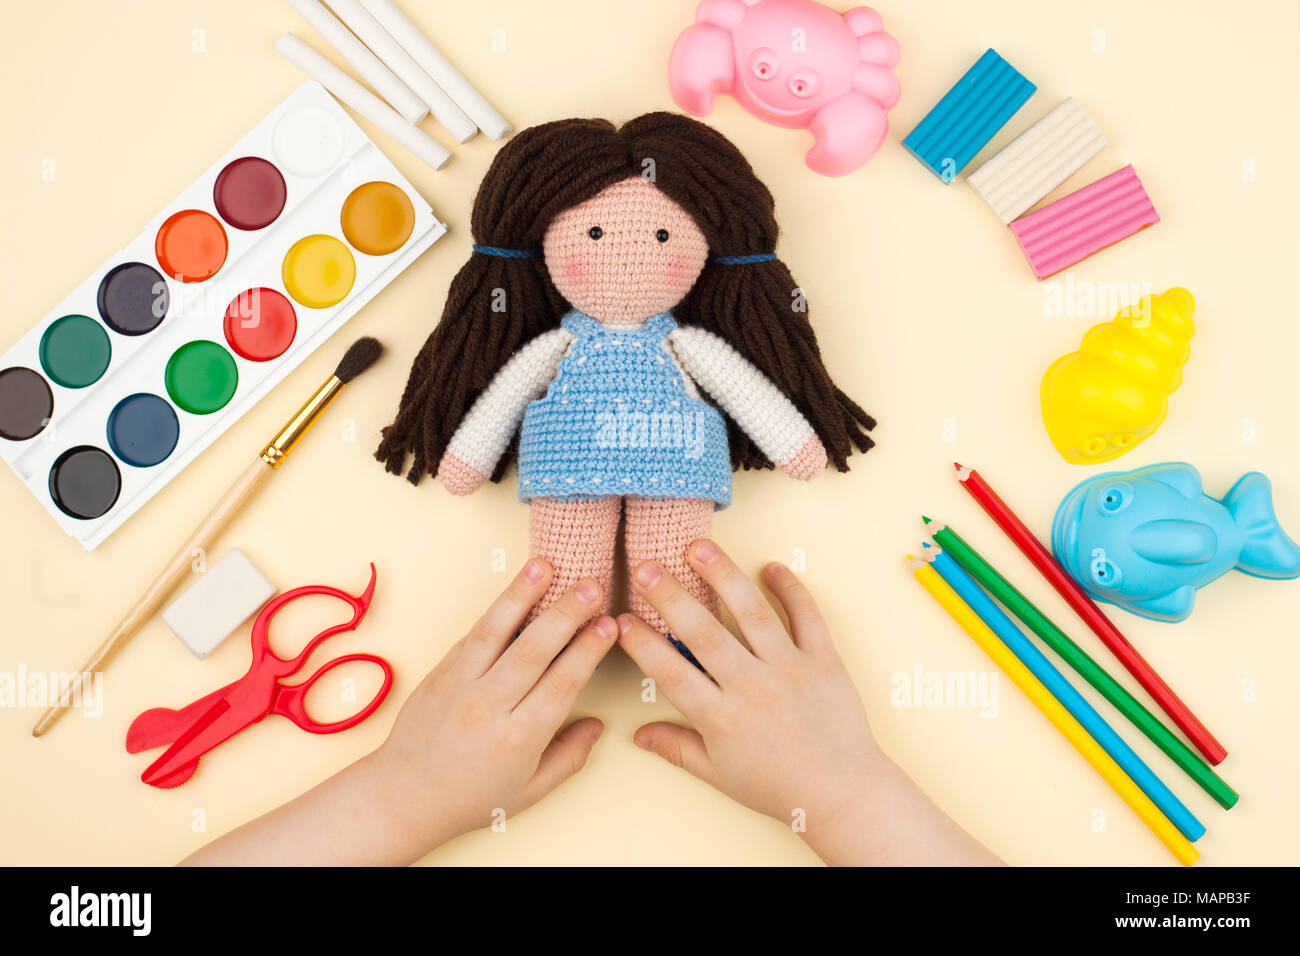 Das Kind sitzt am Tisch mit Objekten für Kreativität, Zeichnung und Hobbys, hält eine gestricken Puppe in den Händen, eine Sicht von oben Stockfoto